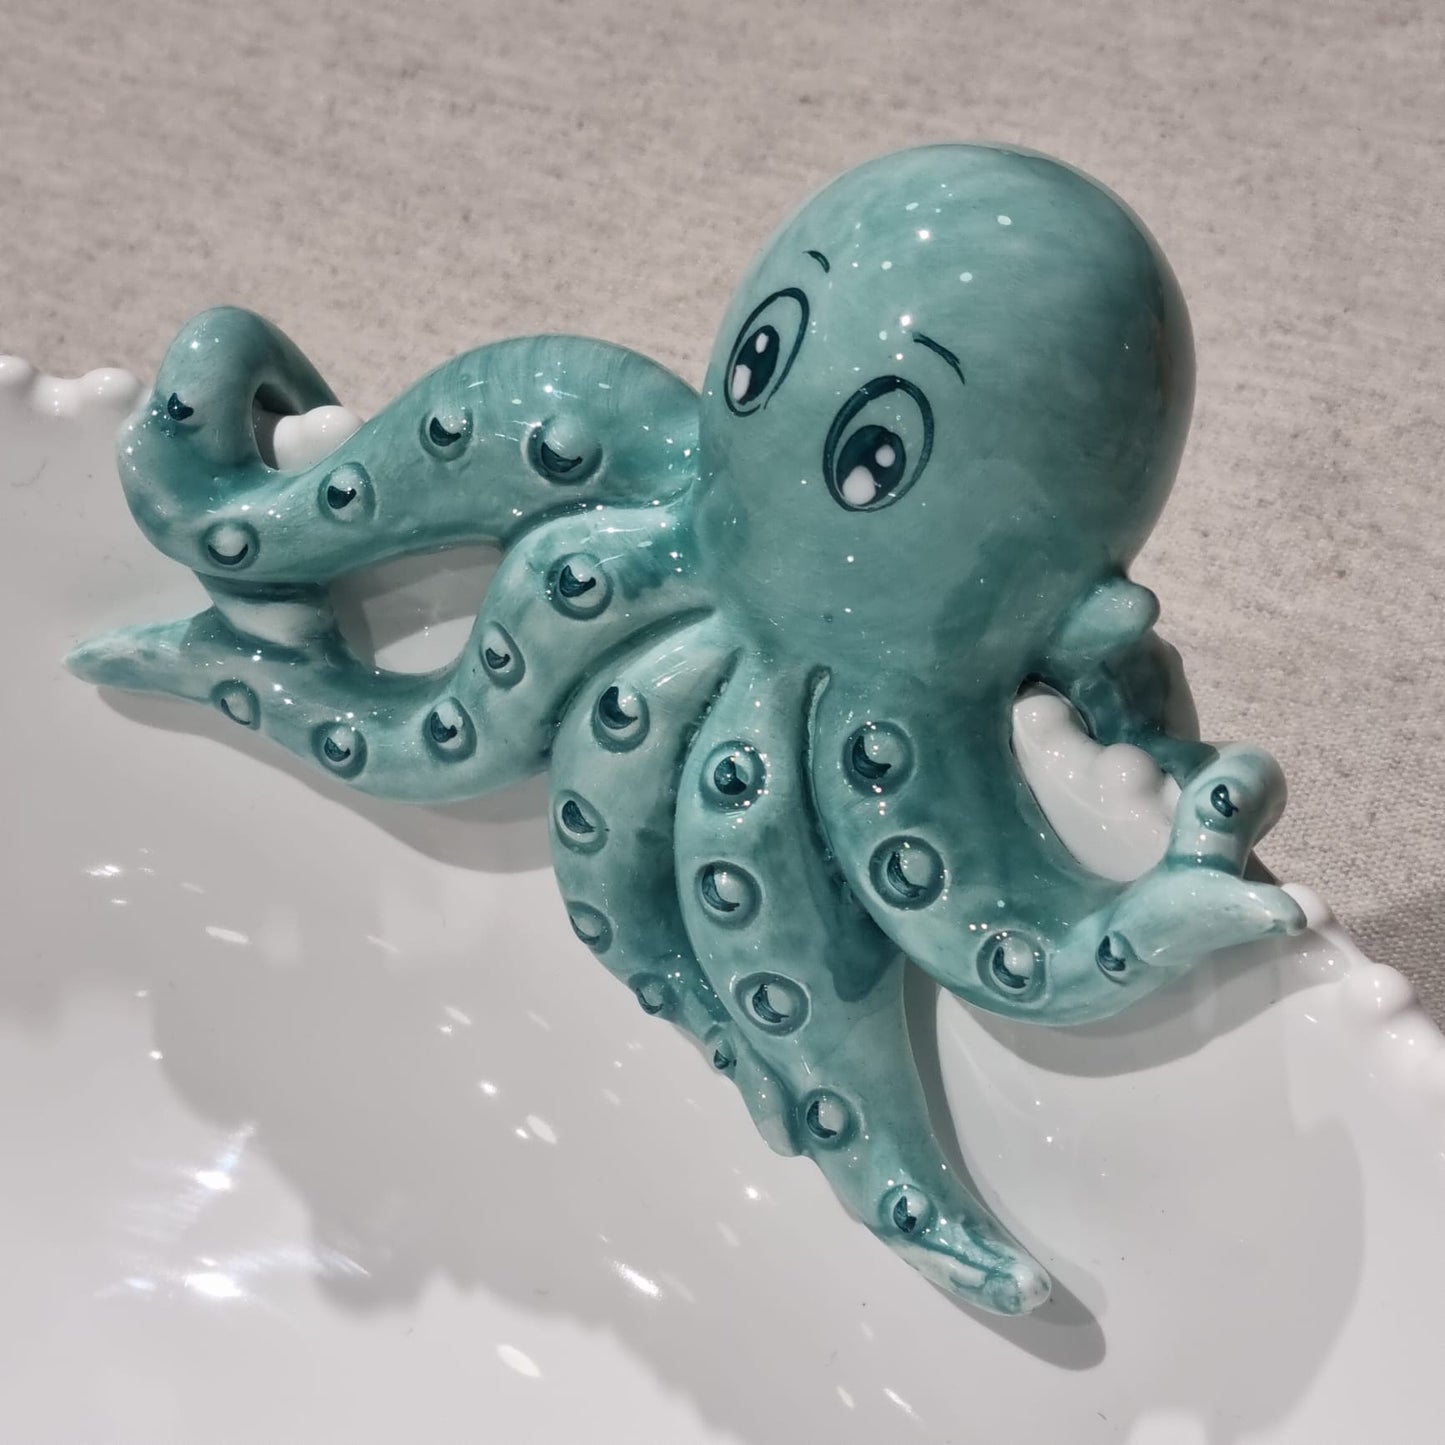 Bļoda ar astoņkāju dekoriem, diam. 35 cm